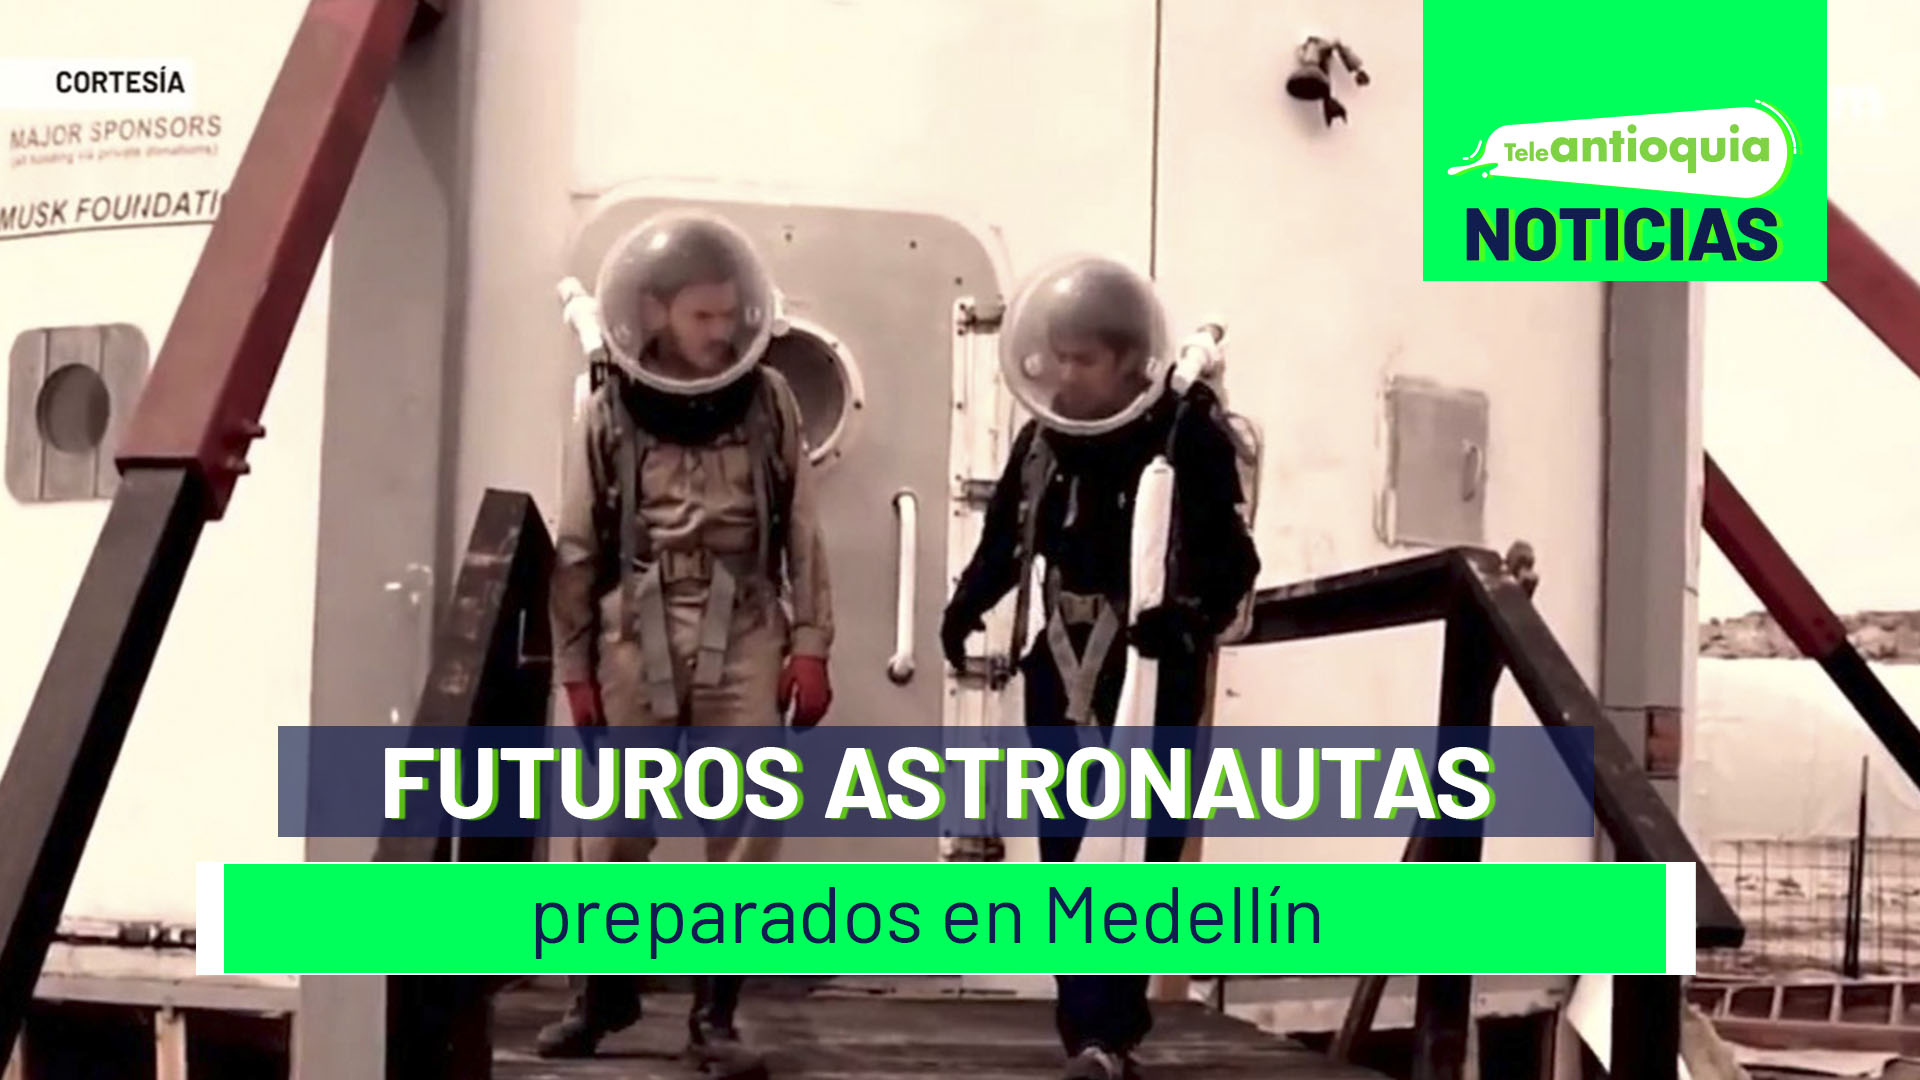 Futuros astronautas preparados en Medellín